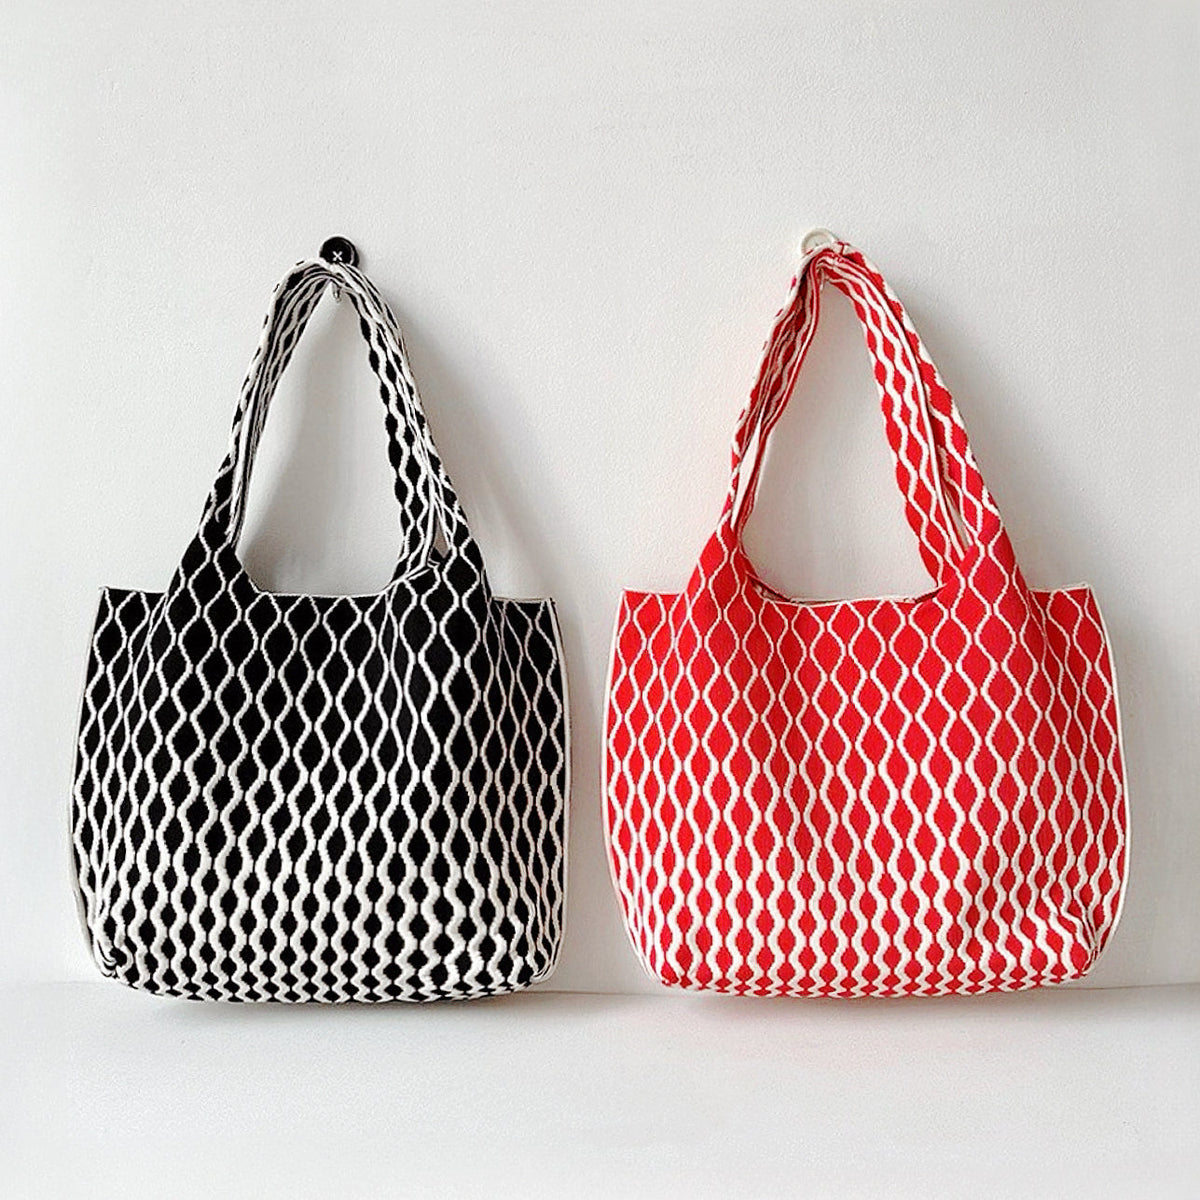 Einkaufstasche mit Ripple-Textur - - Einkaufstasche mit Ripple-Textur - € - - Concept Frankfurt